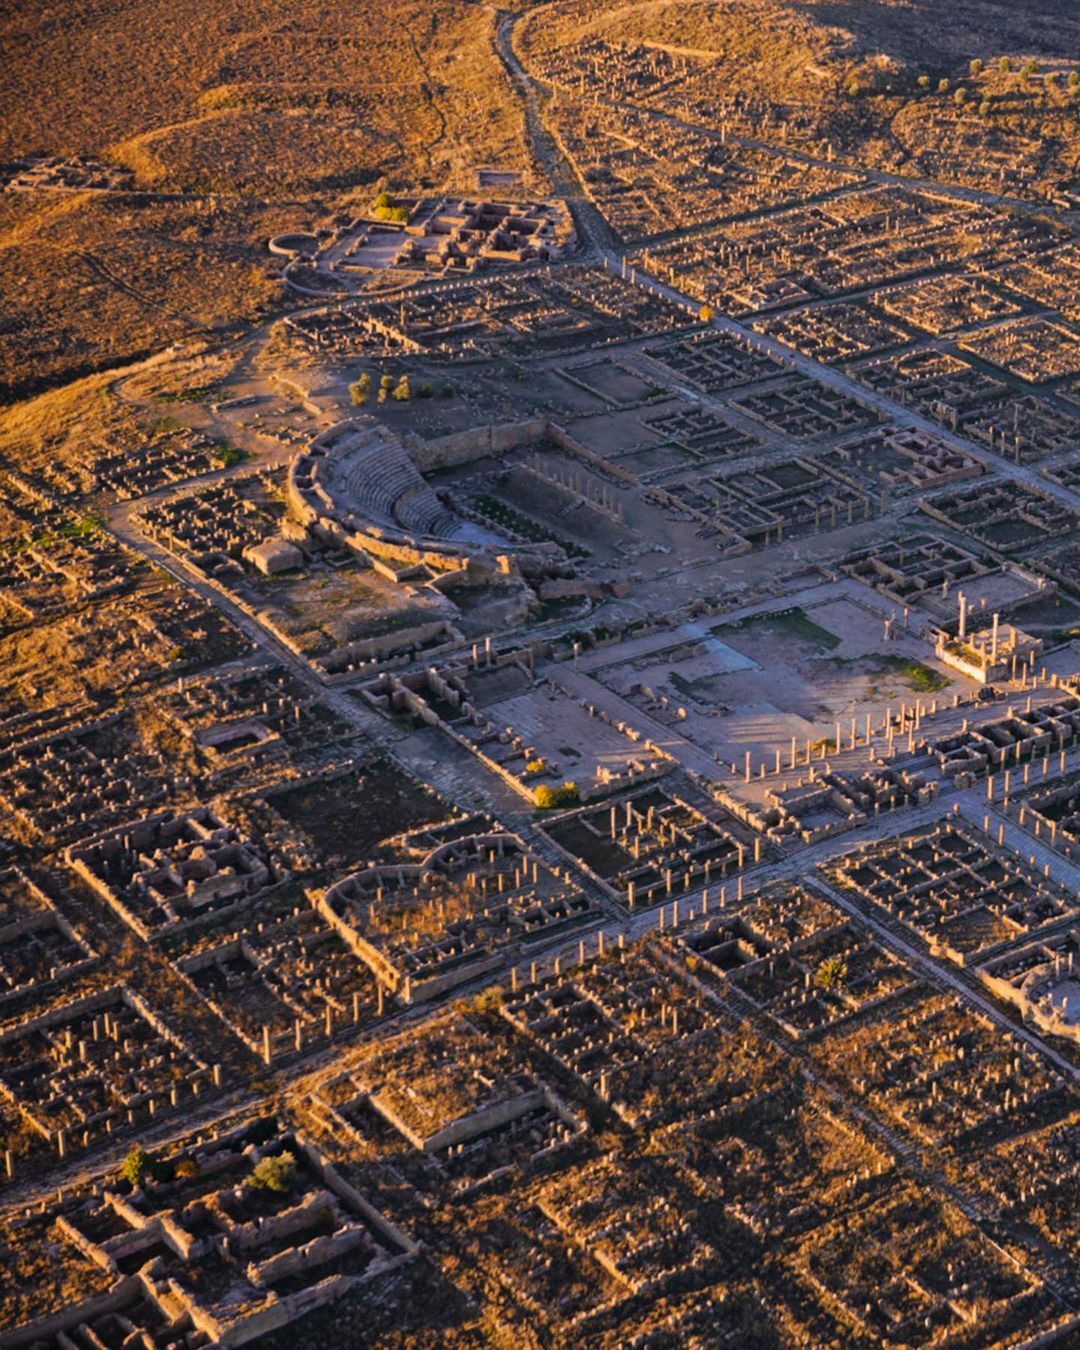 تیمگاد ؛ یکی از زیباترین شهرهای رومی در شمال آفریقا (+عکس)